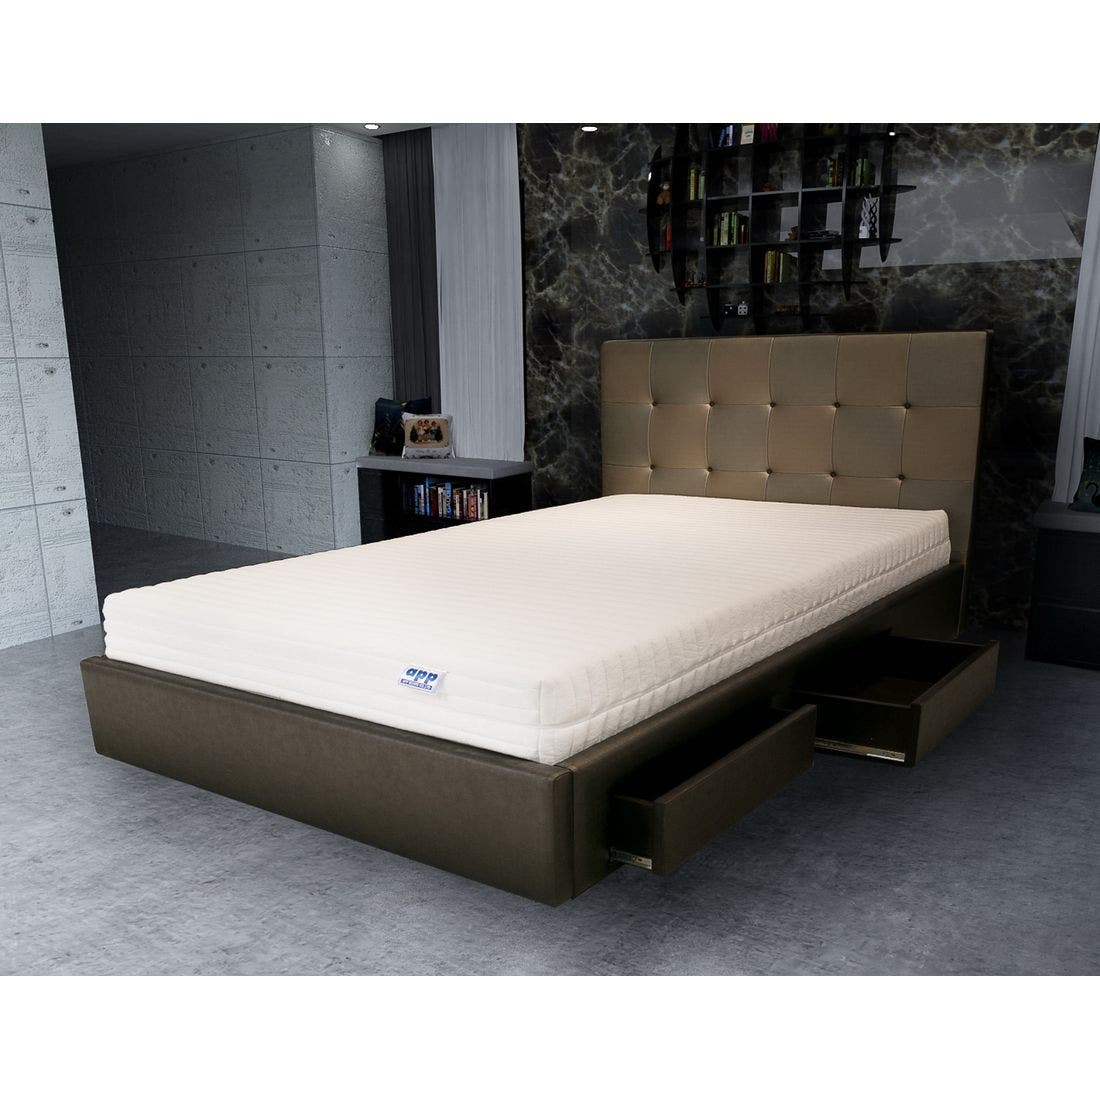 39001623-mattress-bedding-mattresses-latex-mattresses-31